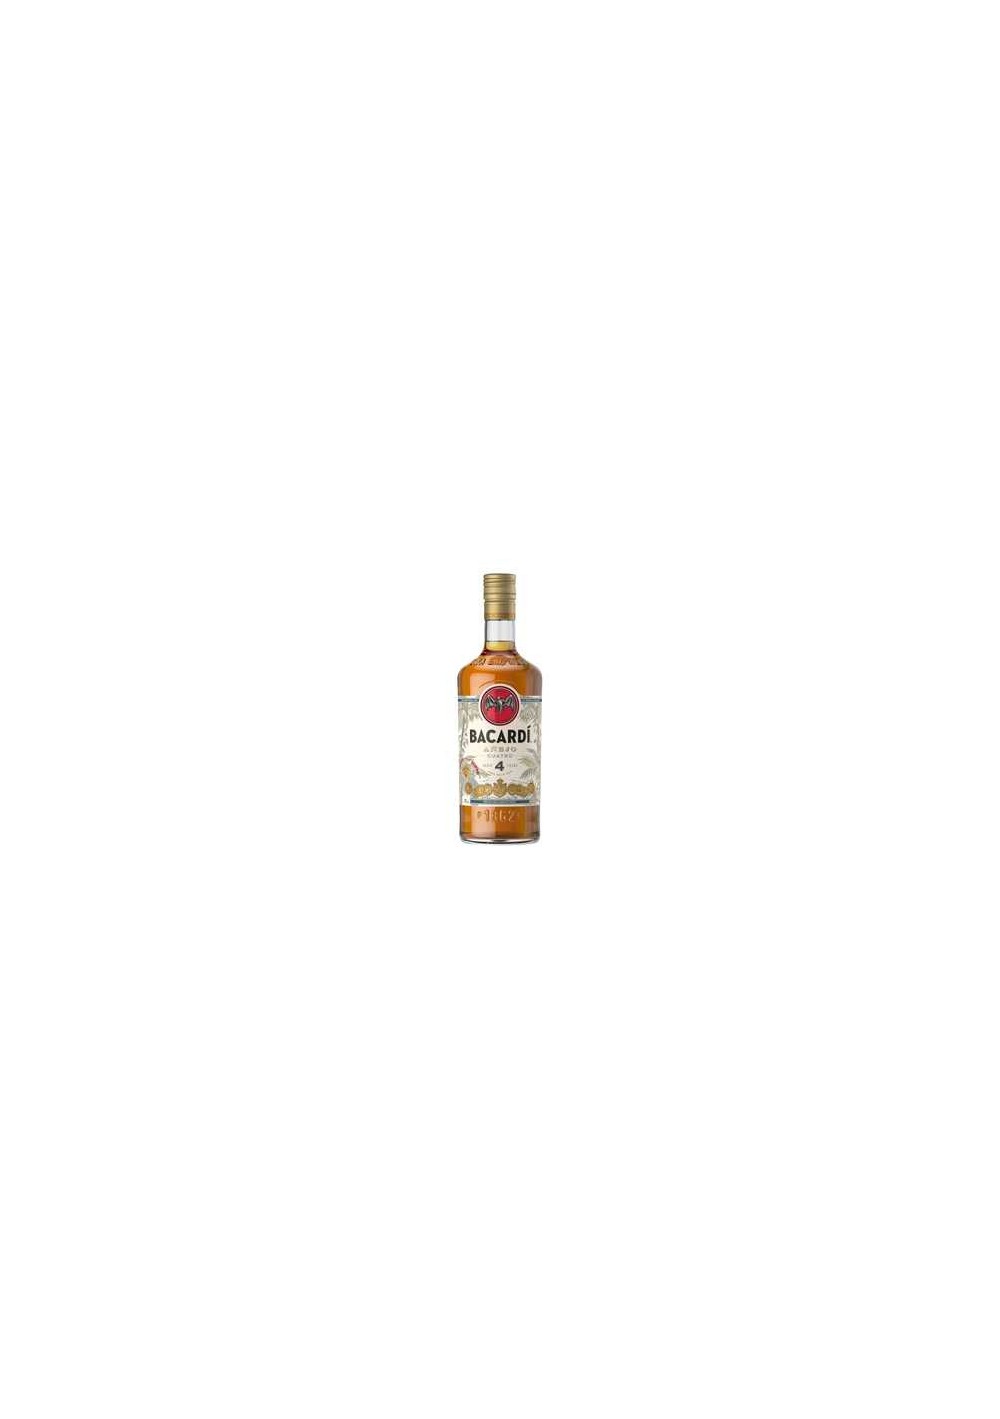 Bacardi - Anejo Cuatro - 4 jaar - Rum - (1 liter)